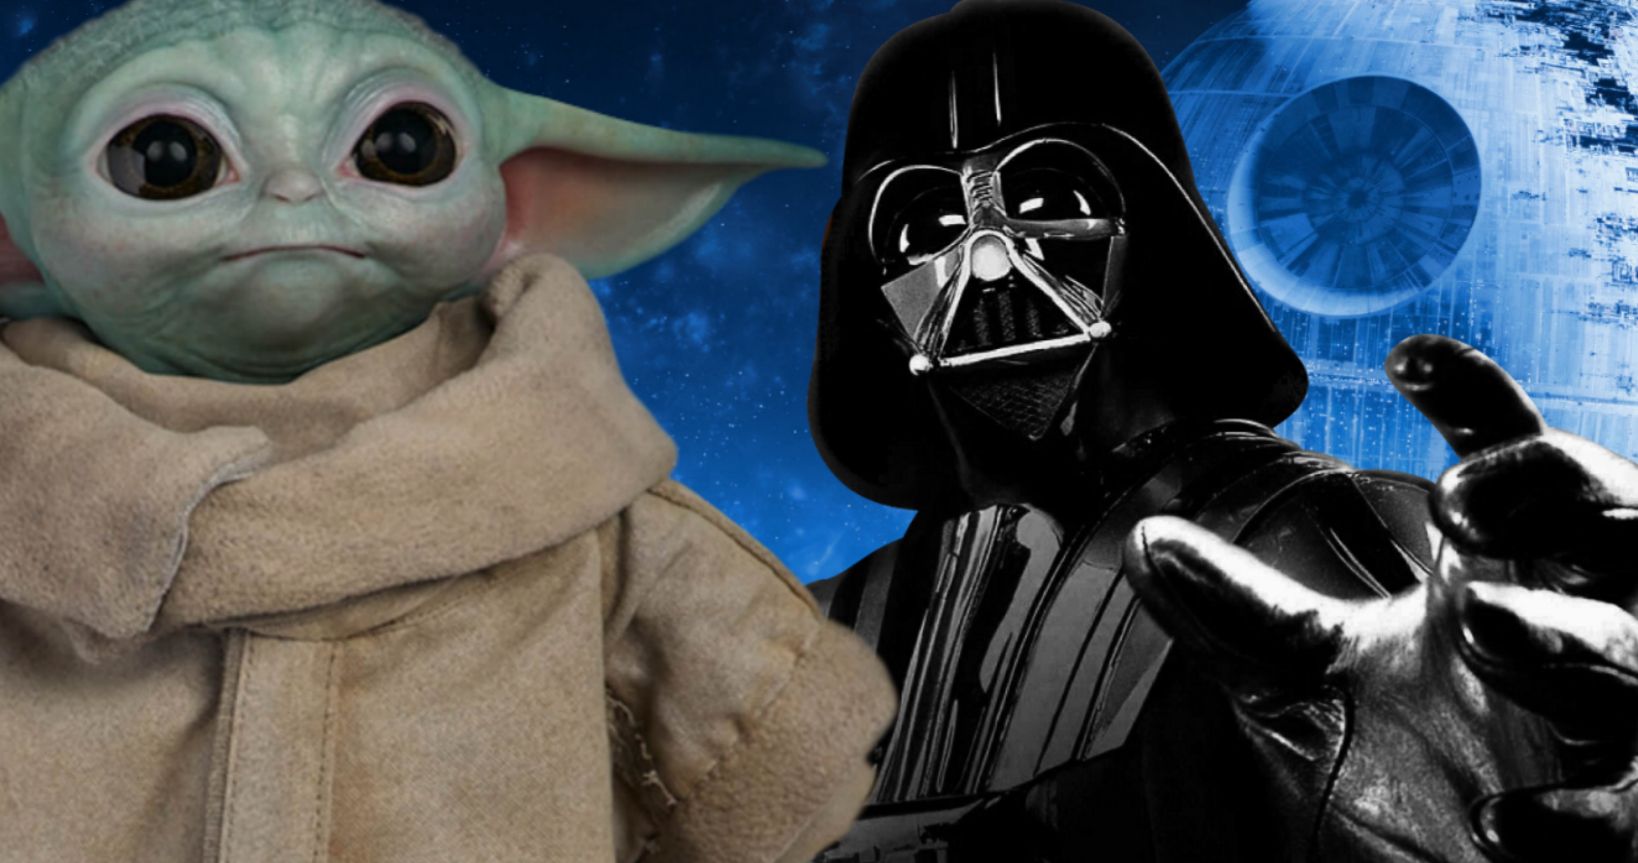 Baby Yoda Beats Darth Vader as Most Popular Star Wars Character